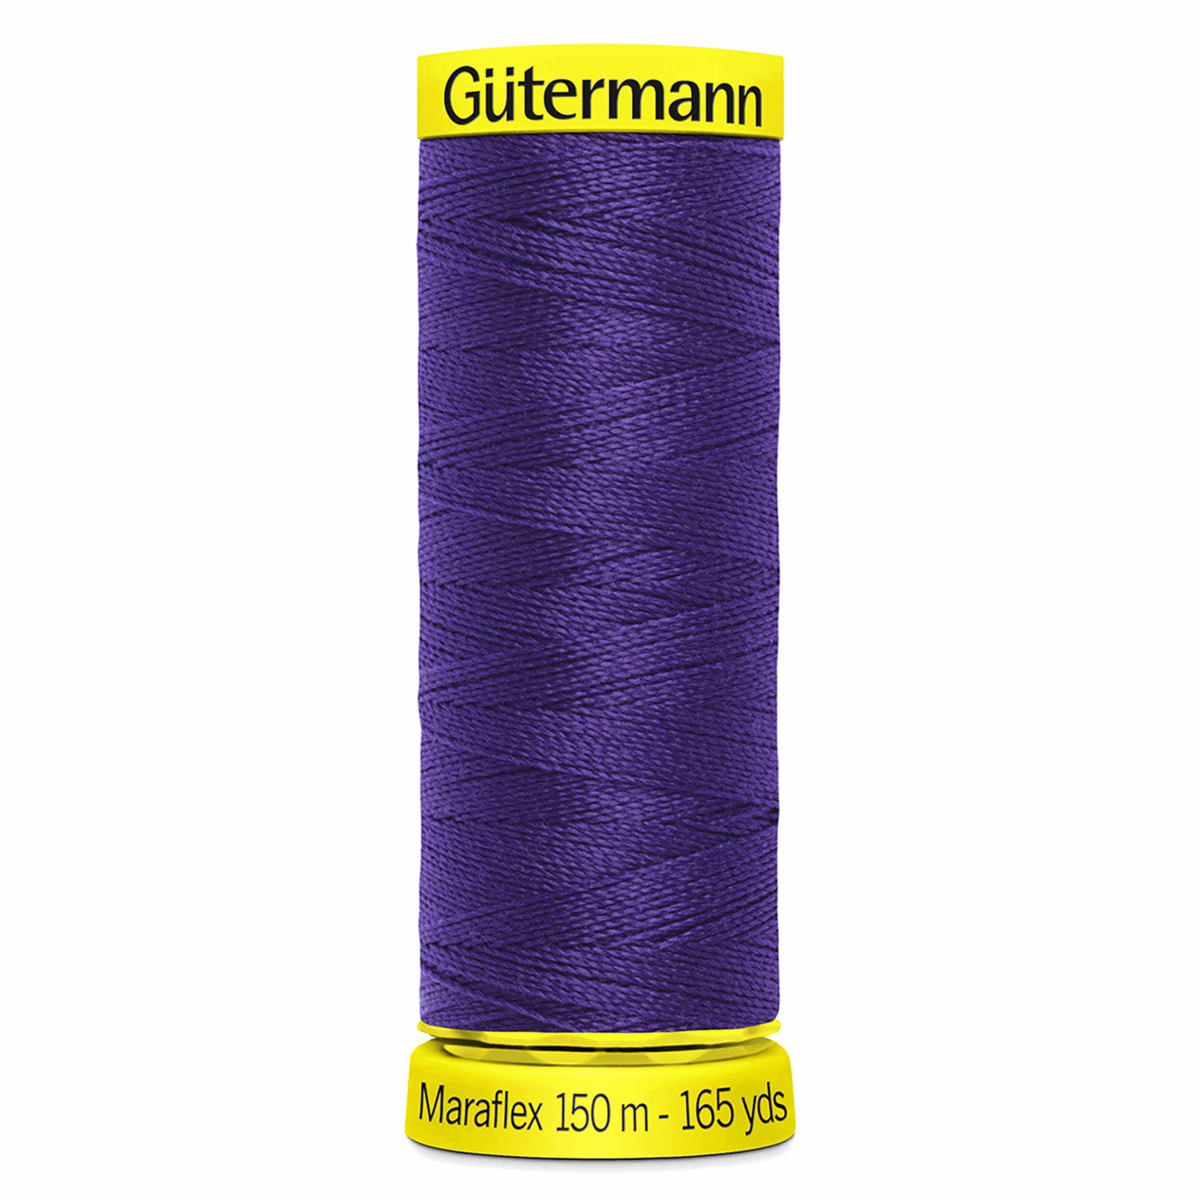 Gutermann Maraflex Elastic Sewing Thread 150m Indigo 373